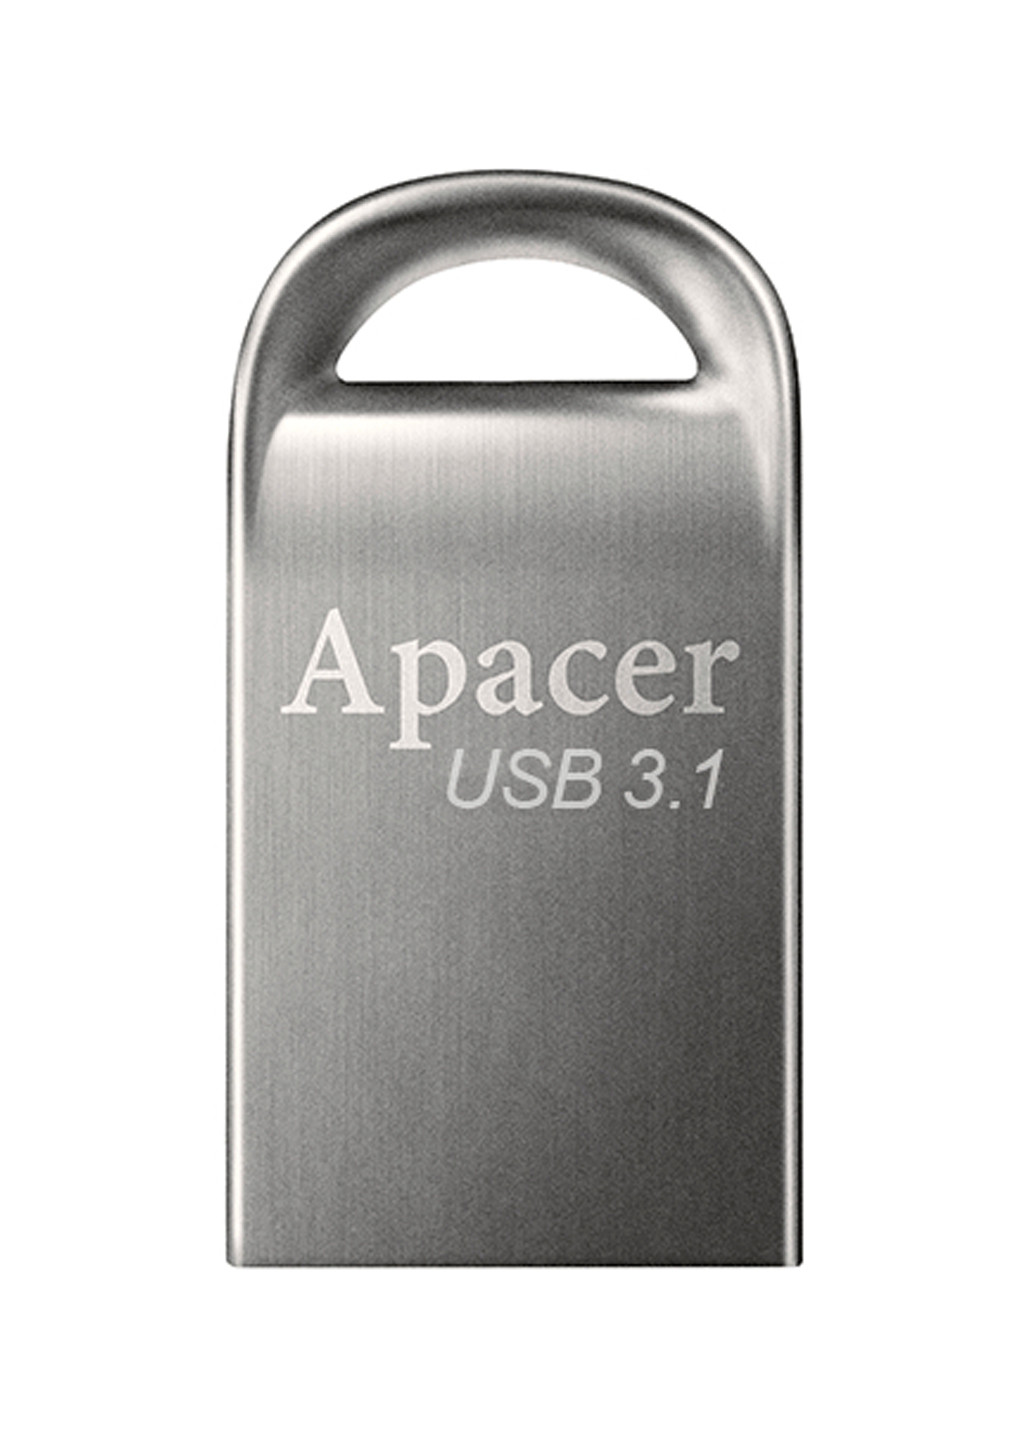 Флеш память USB AH156 32GB USB 3.0 Ashy (AP32GAH156A-1) Apacer флеш память usb apacer ah156 32gb usb 3.0 ashy (ap32gah156a-1) (132824593)